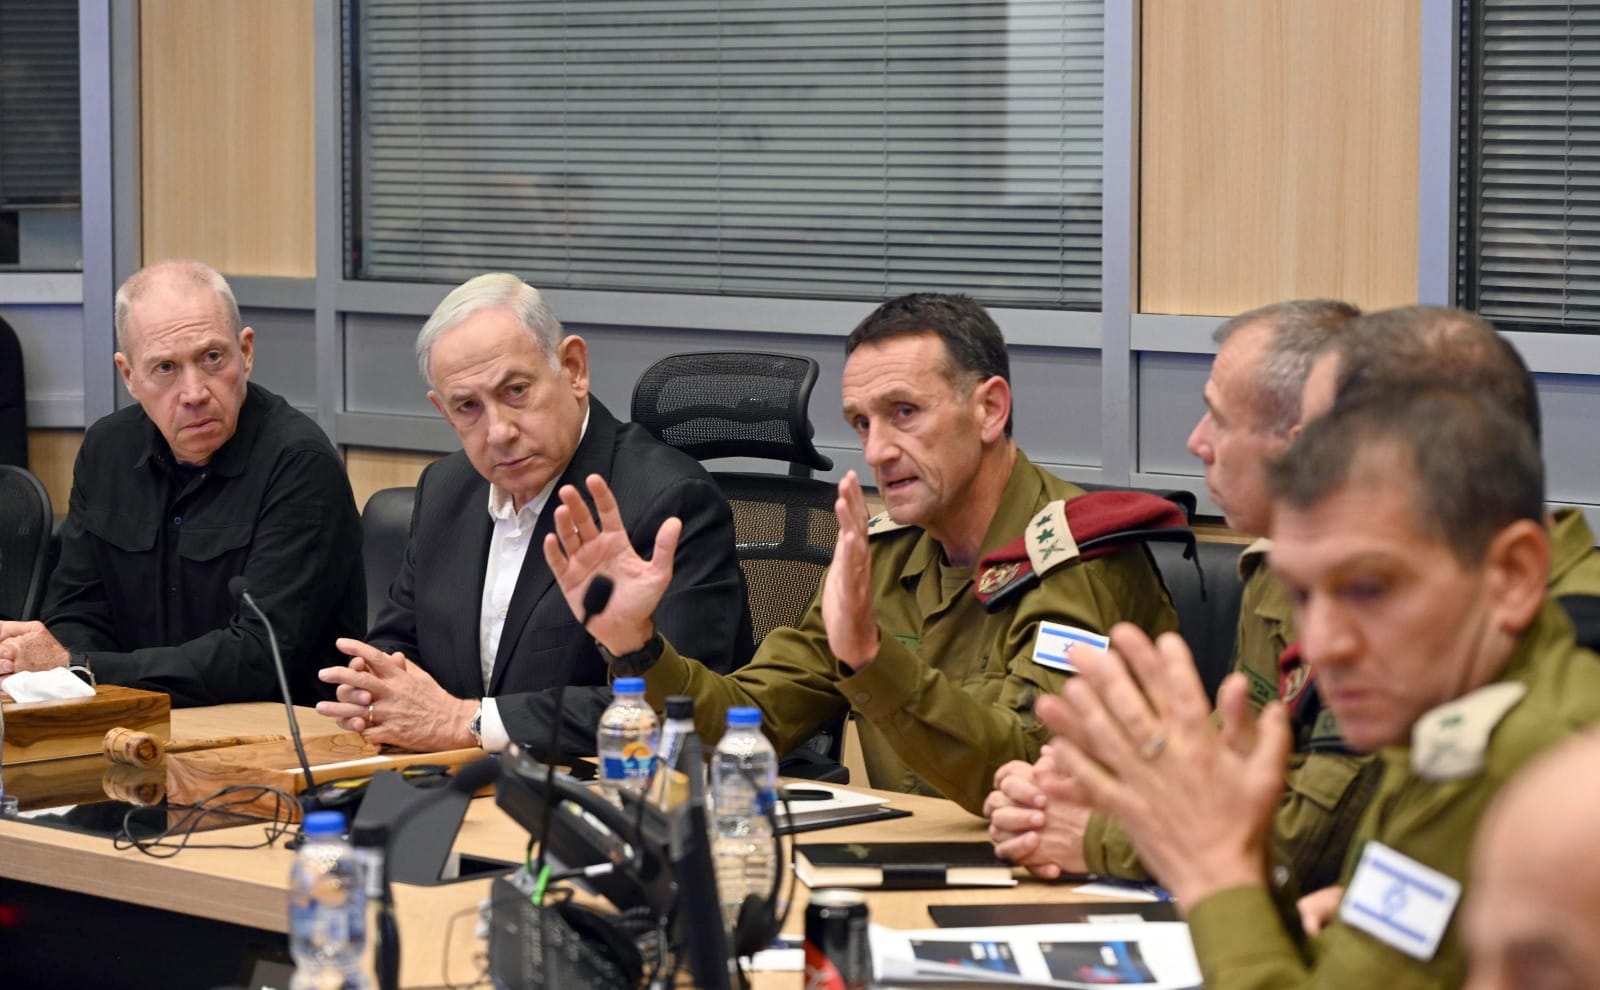 Clash vif entre le chef d'état-major israélien et des ministres sur Gaza